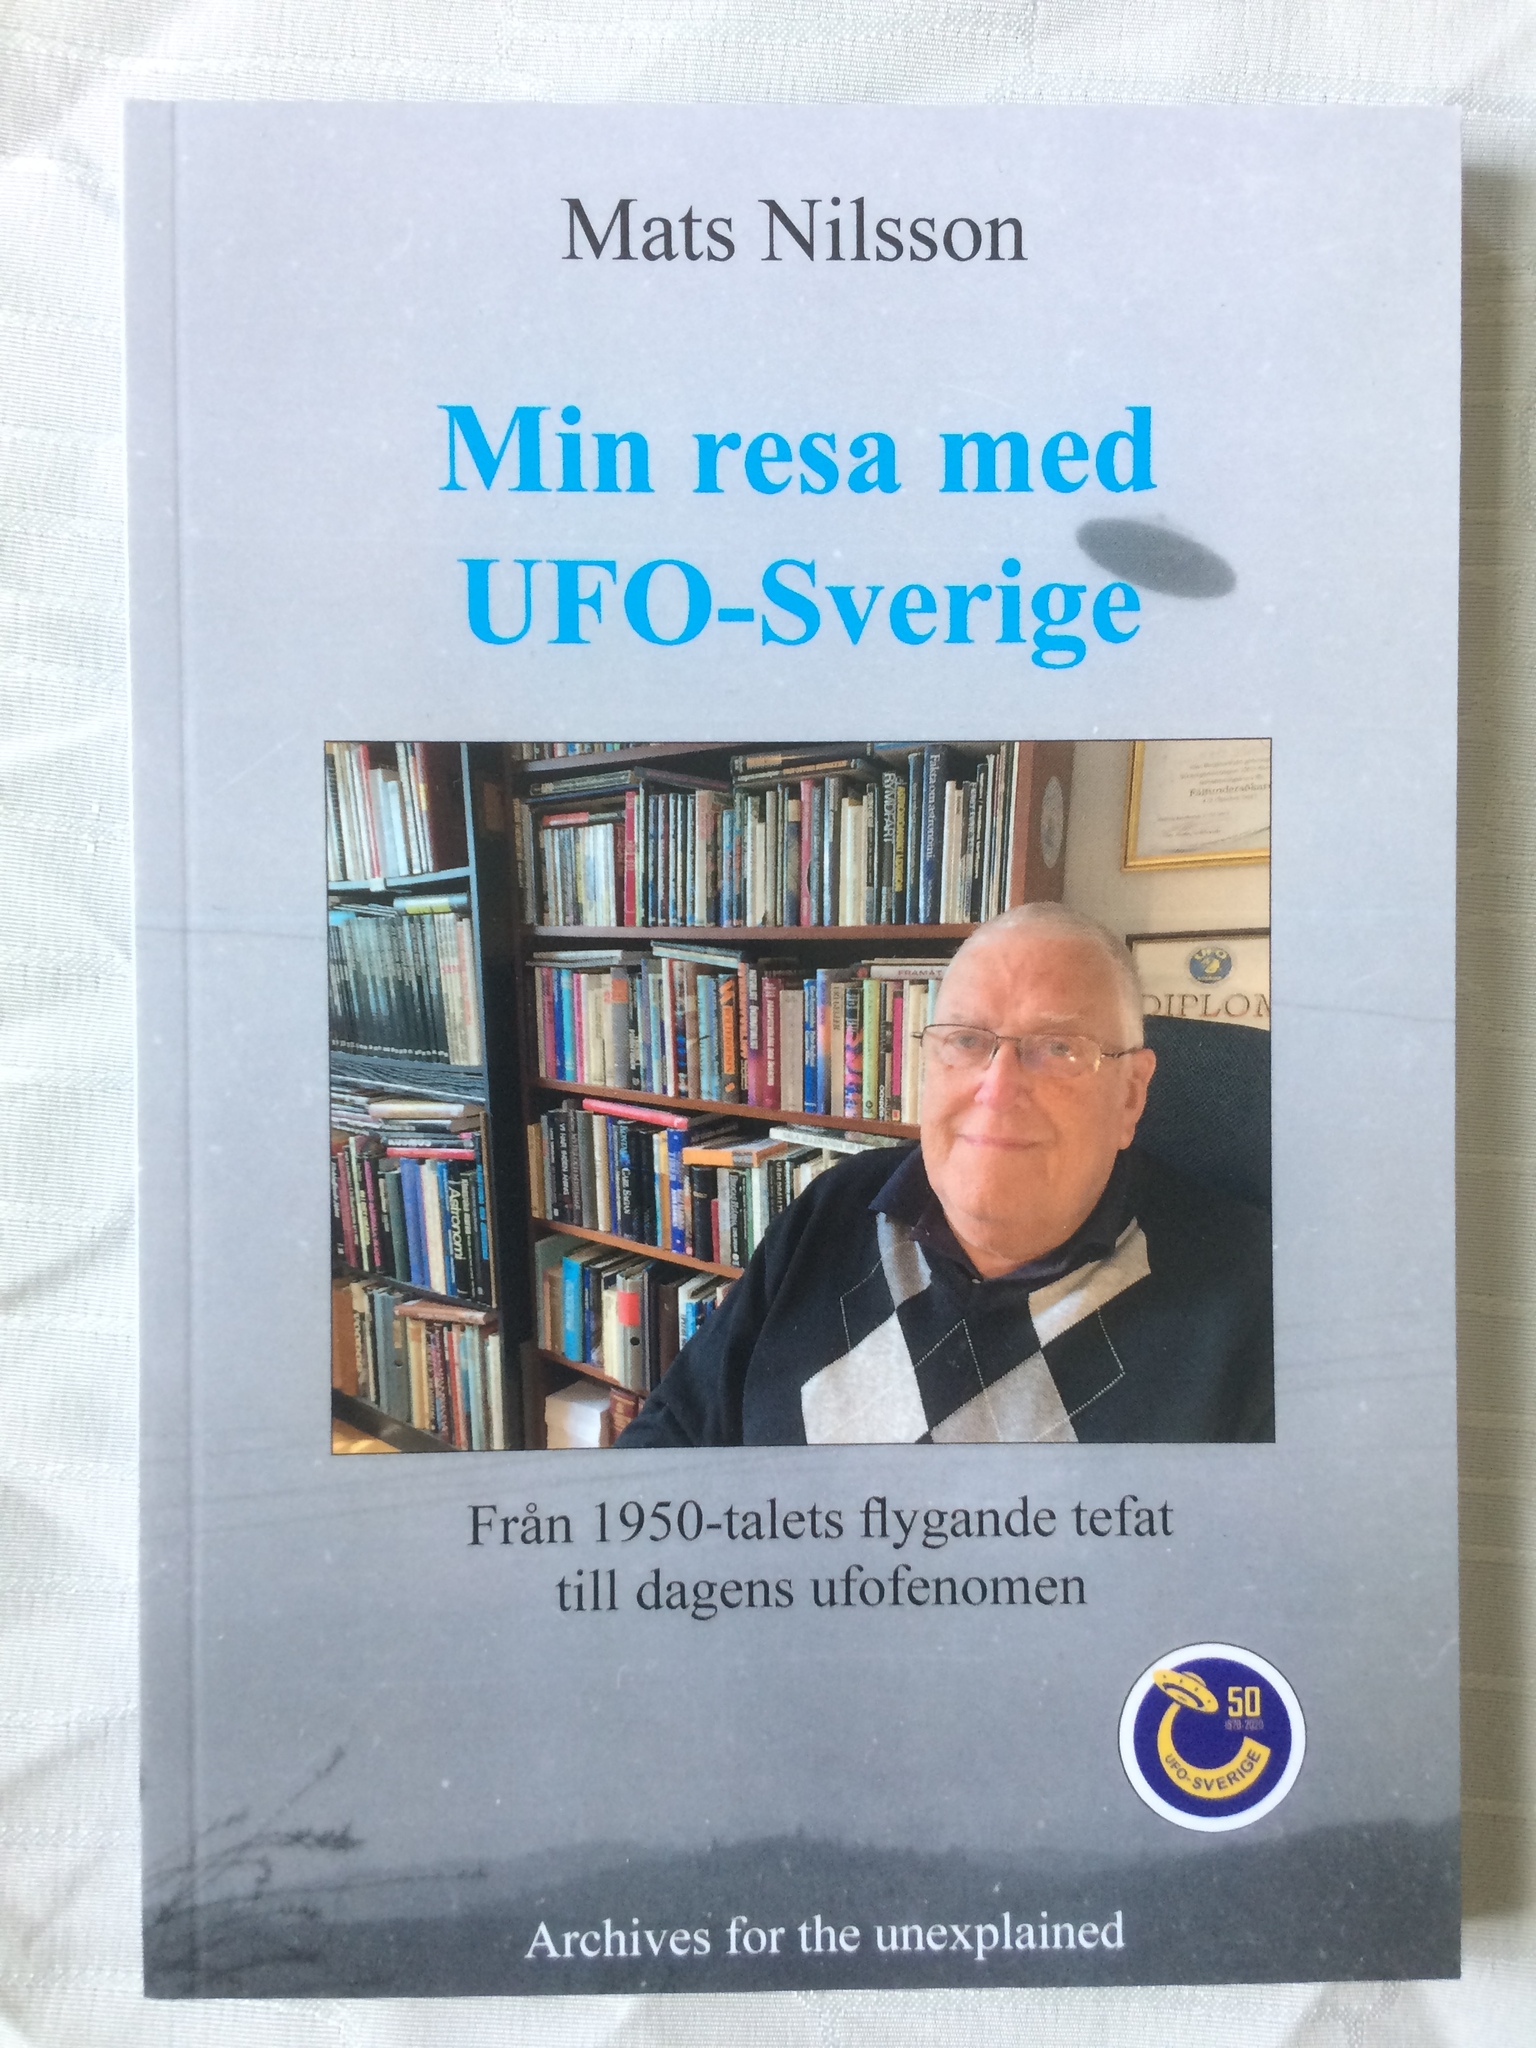 Nilsson, Mats "Min resa med UFO-Sverige - från 1950-talets flygande tefat till dagens ufofenomen" HÄFTAD